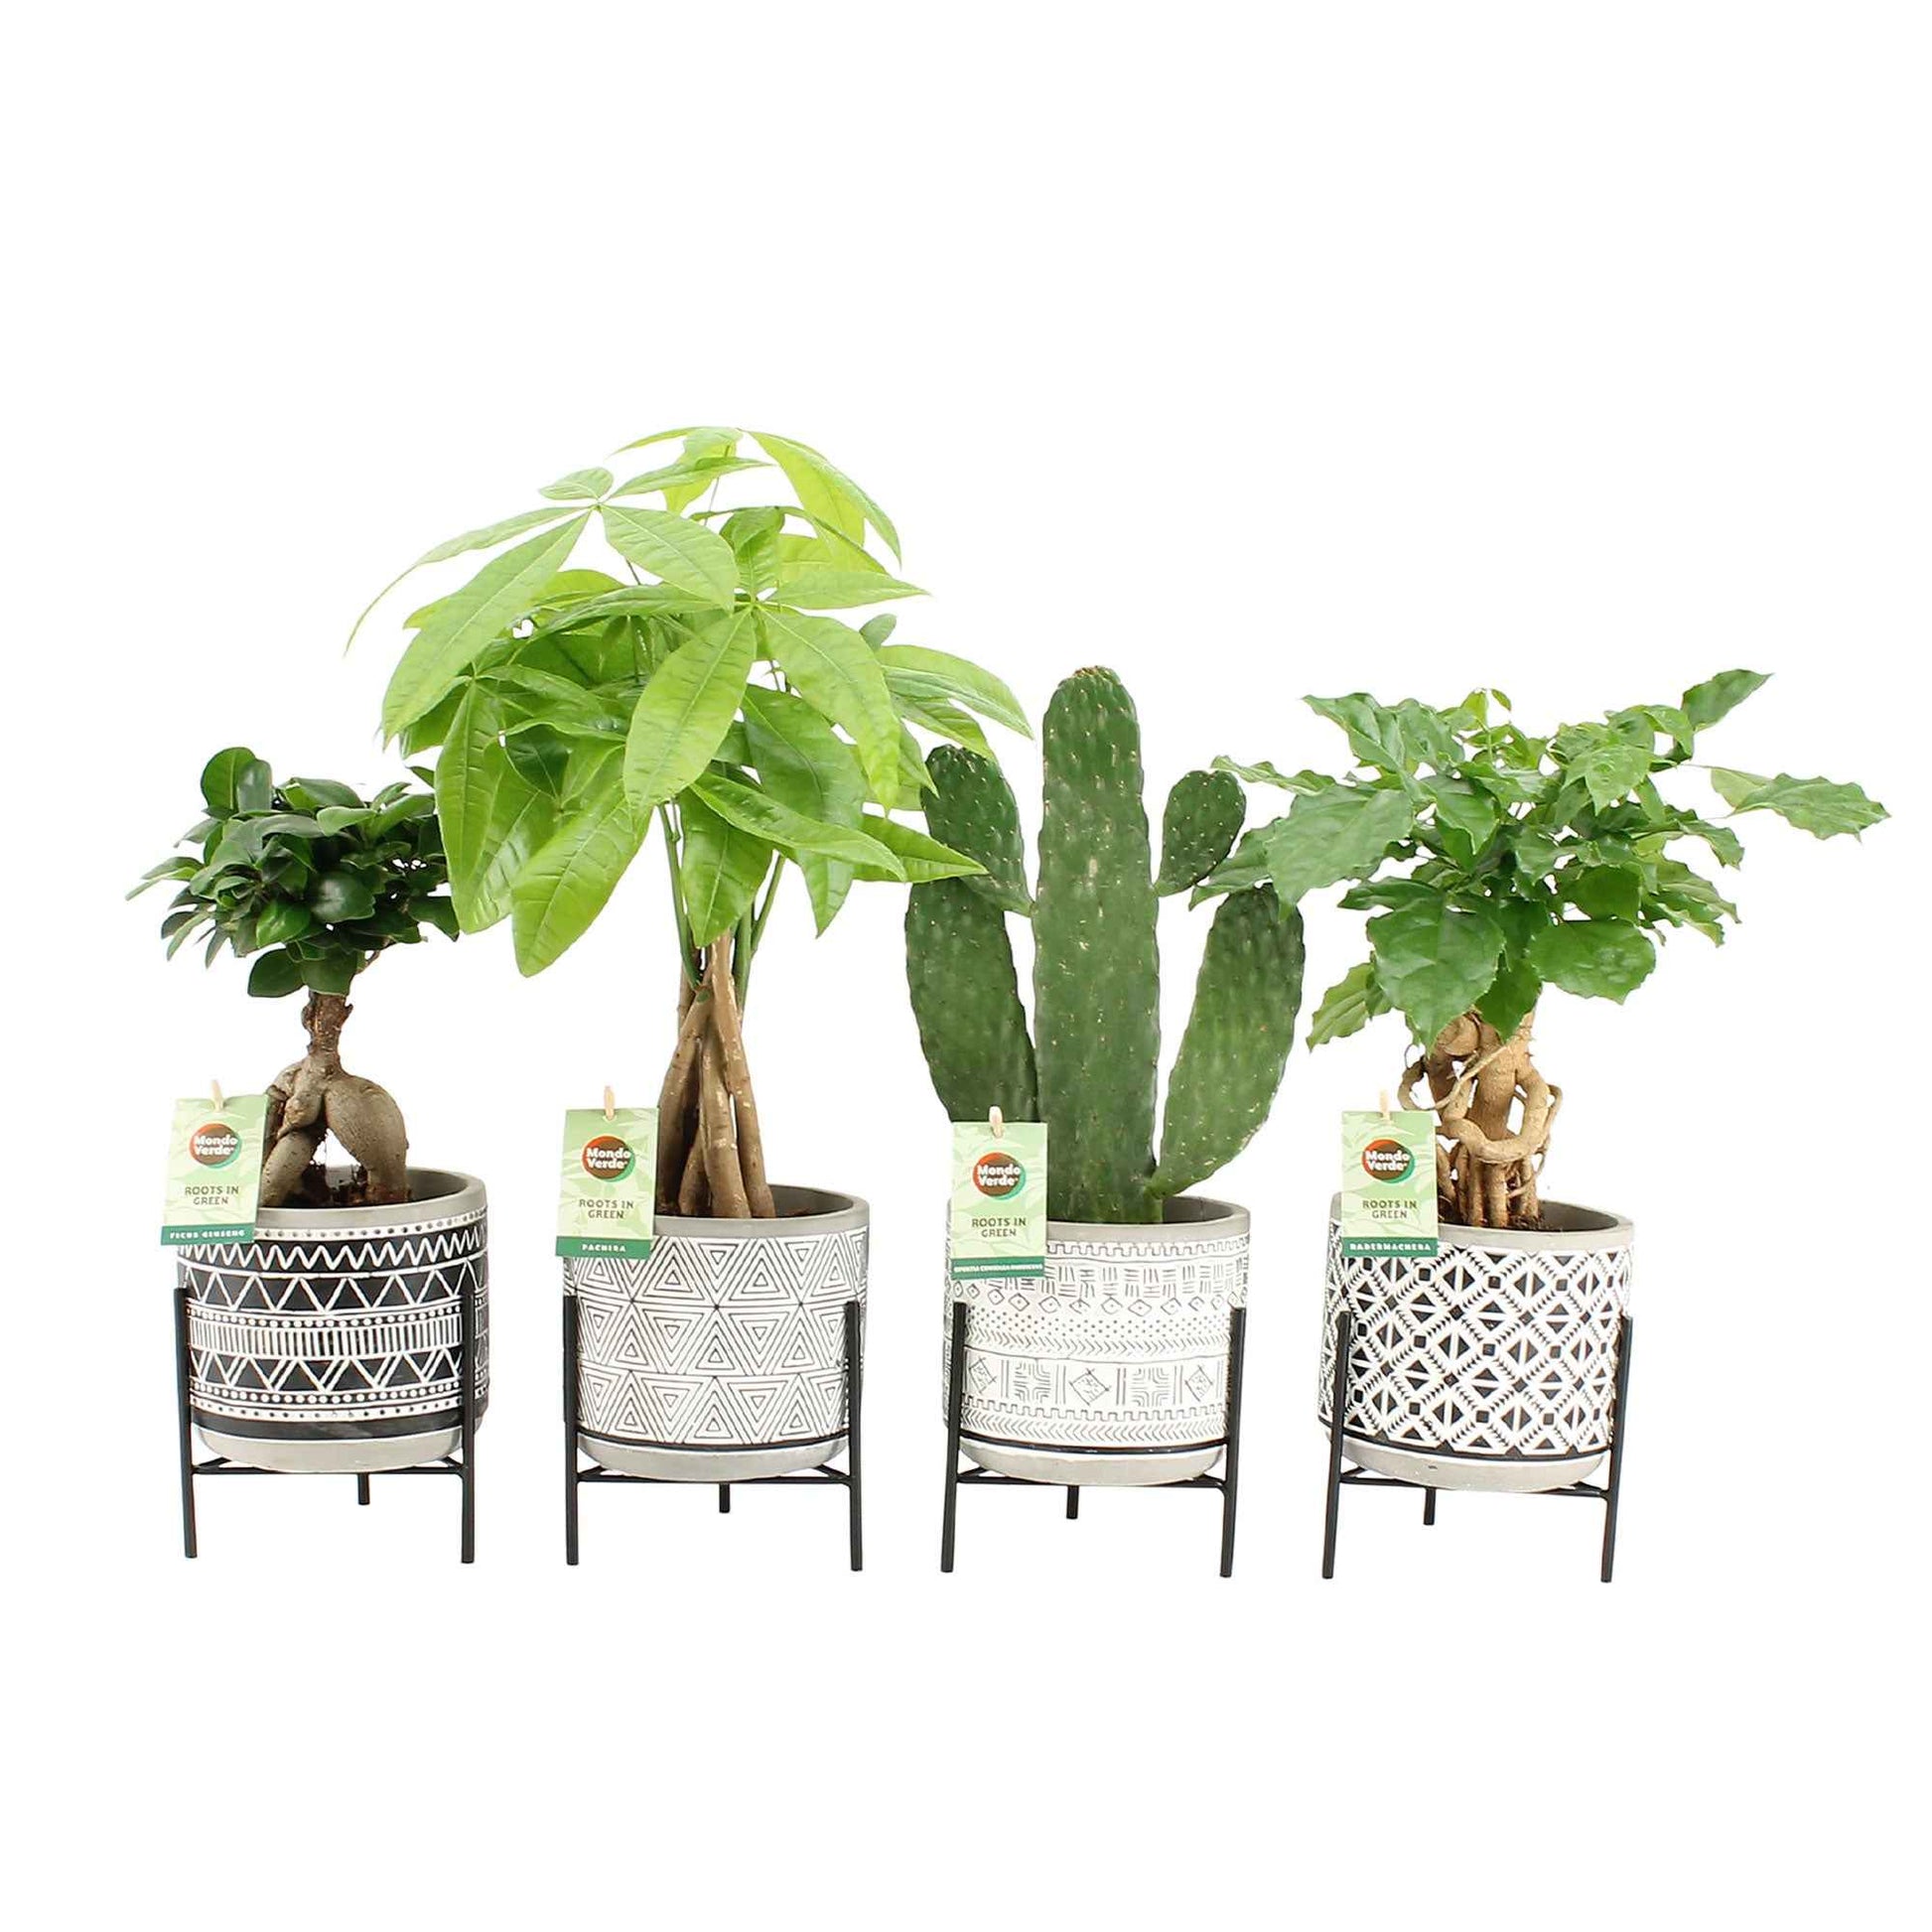 4x Asiatische Zimmerpflanzen - Mischung 'Green paradise' inkl. Ziertöpfe - Beliebte grüne Zimmerpflanzen